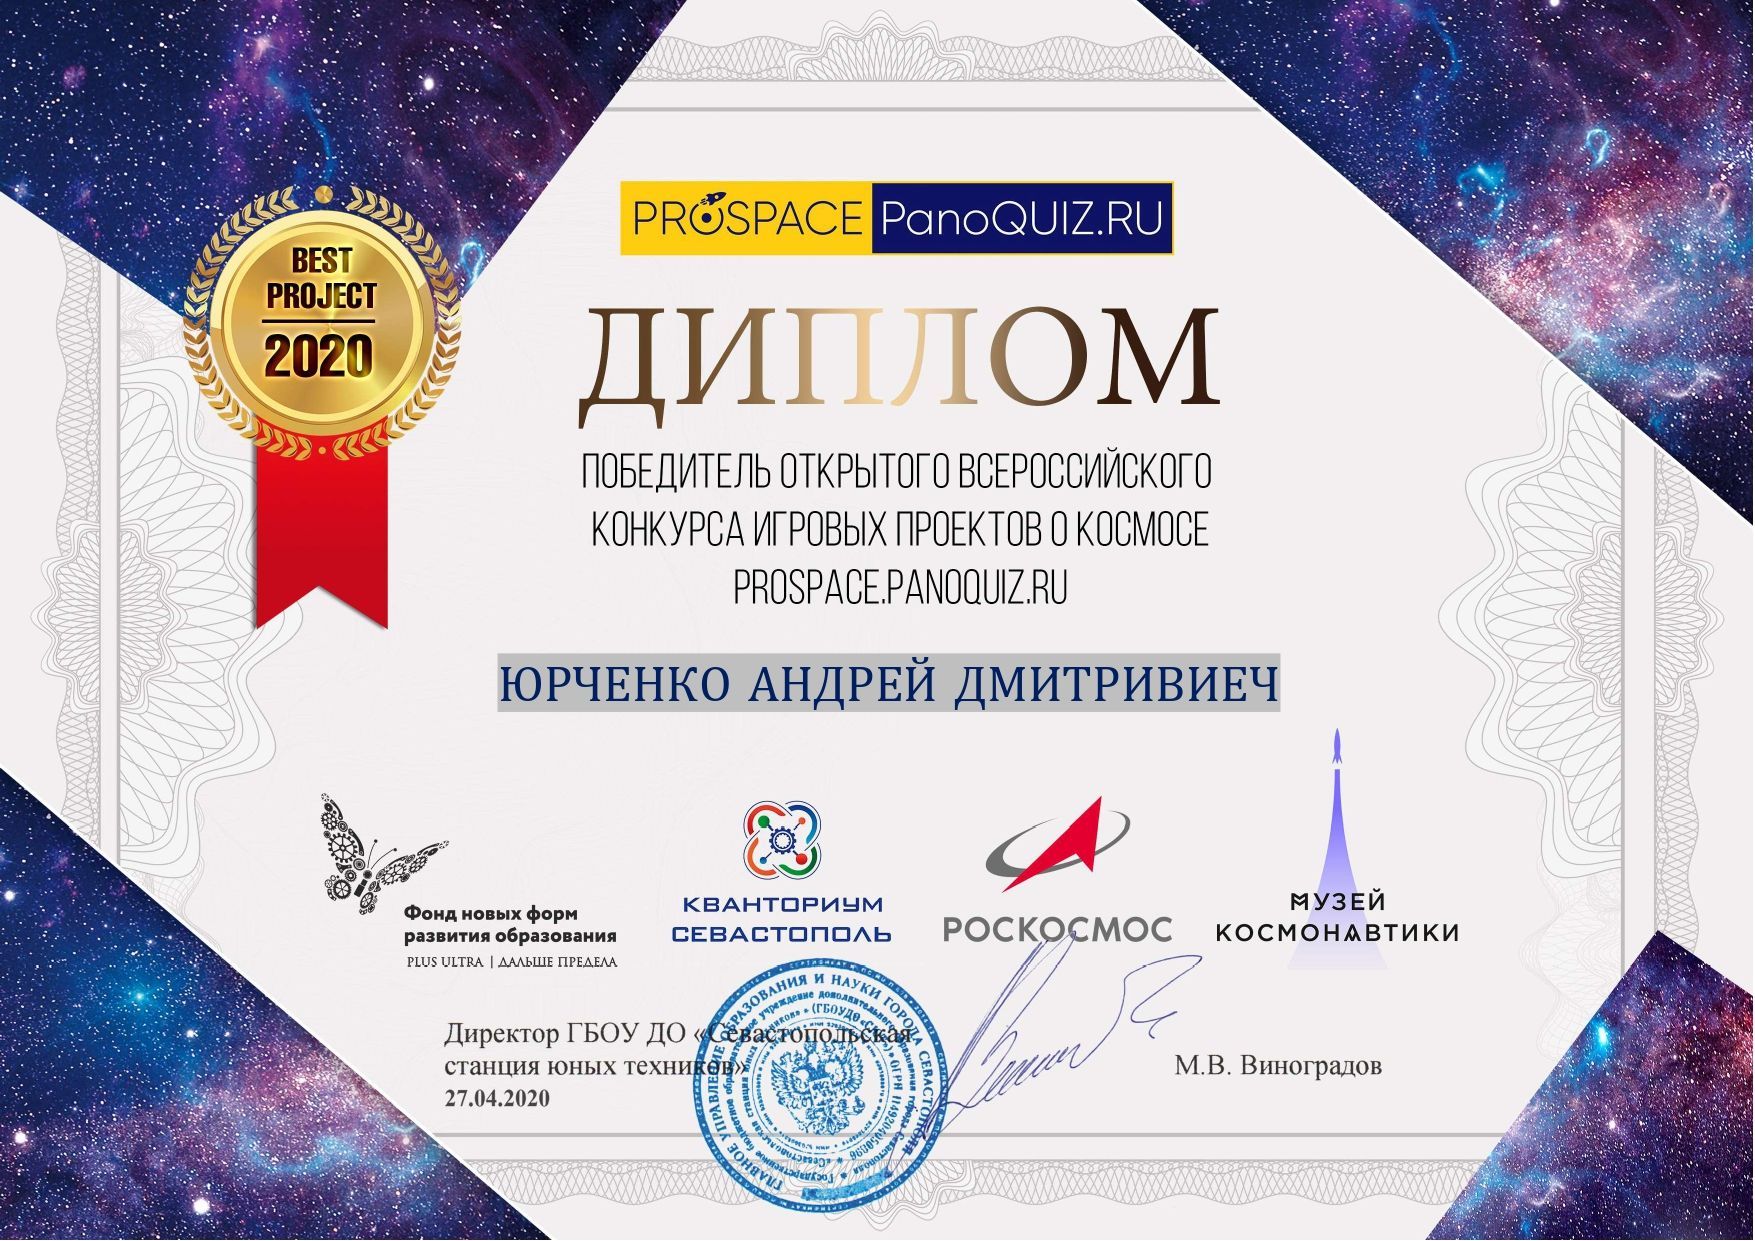 Лучший в космосе! Кванторианцы вышли победителями из всероссийского конкурса игровых проектов